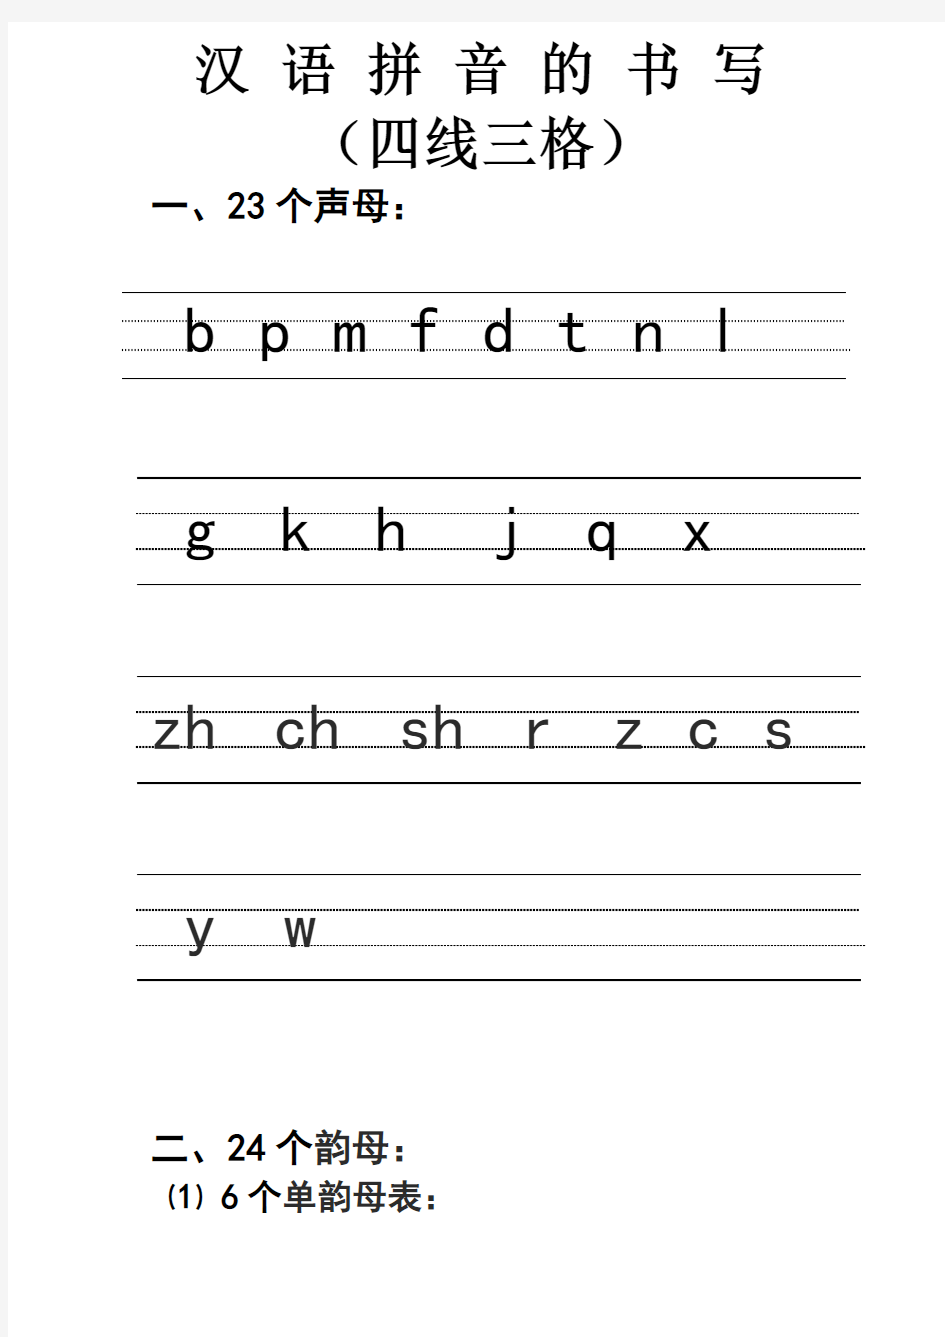 汉语拼音的书写格式-(四线三格)